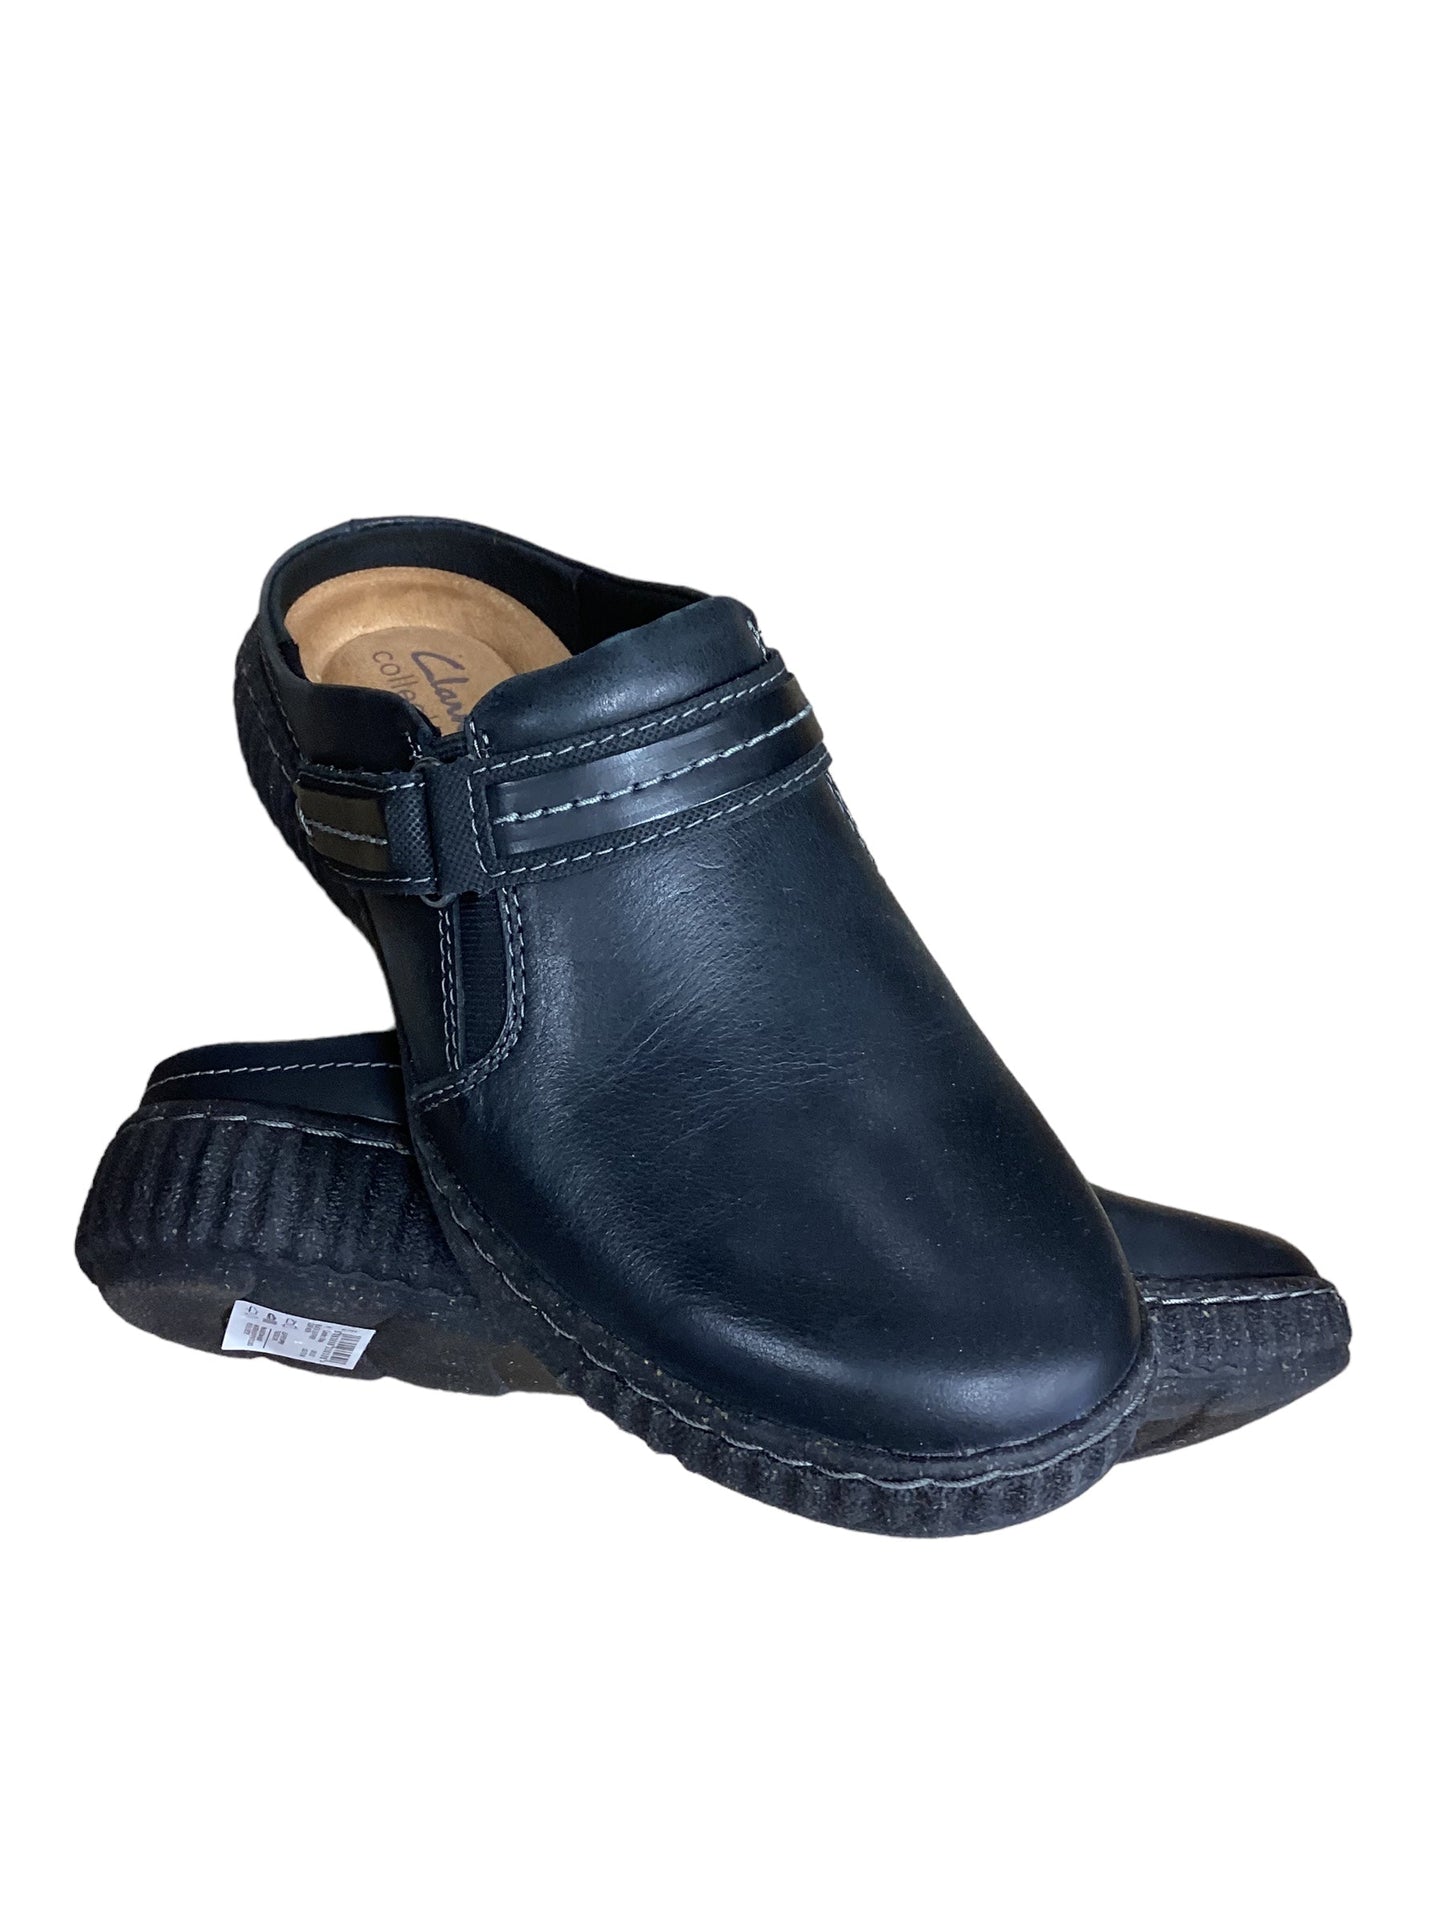 Black Shoes Flats Clarks, Size 7.5